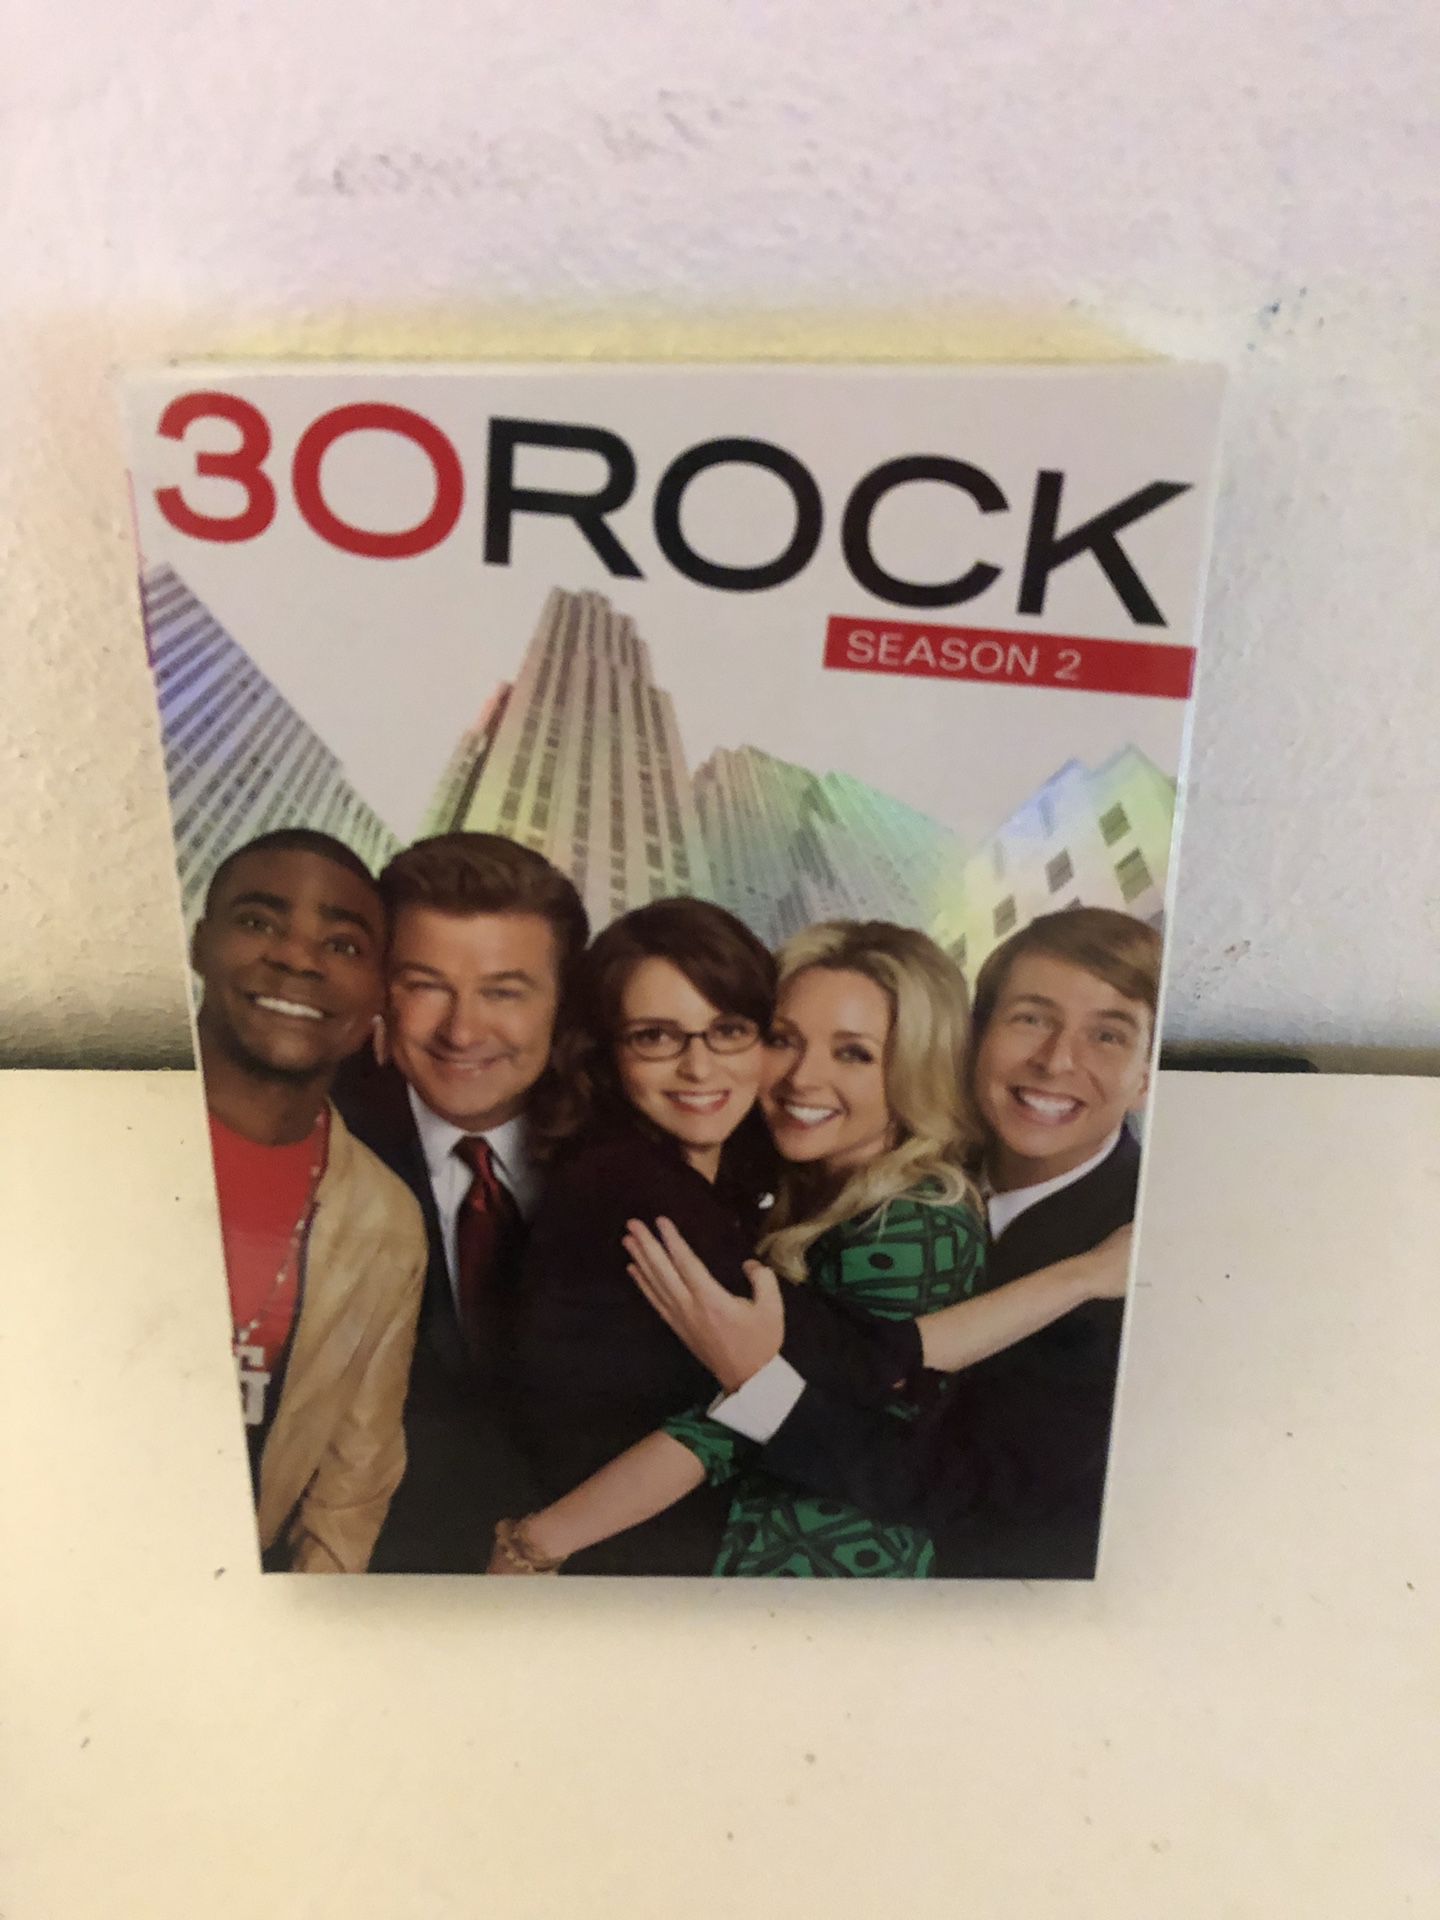 30 rock season 2 DVD